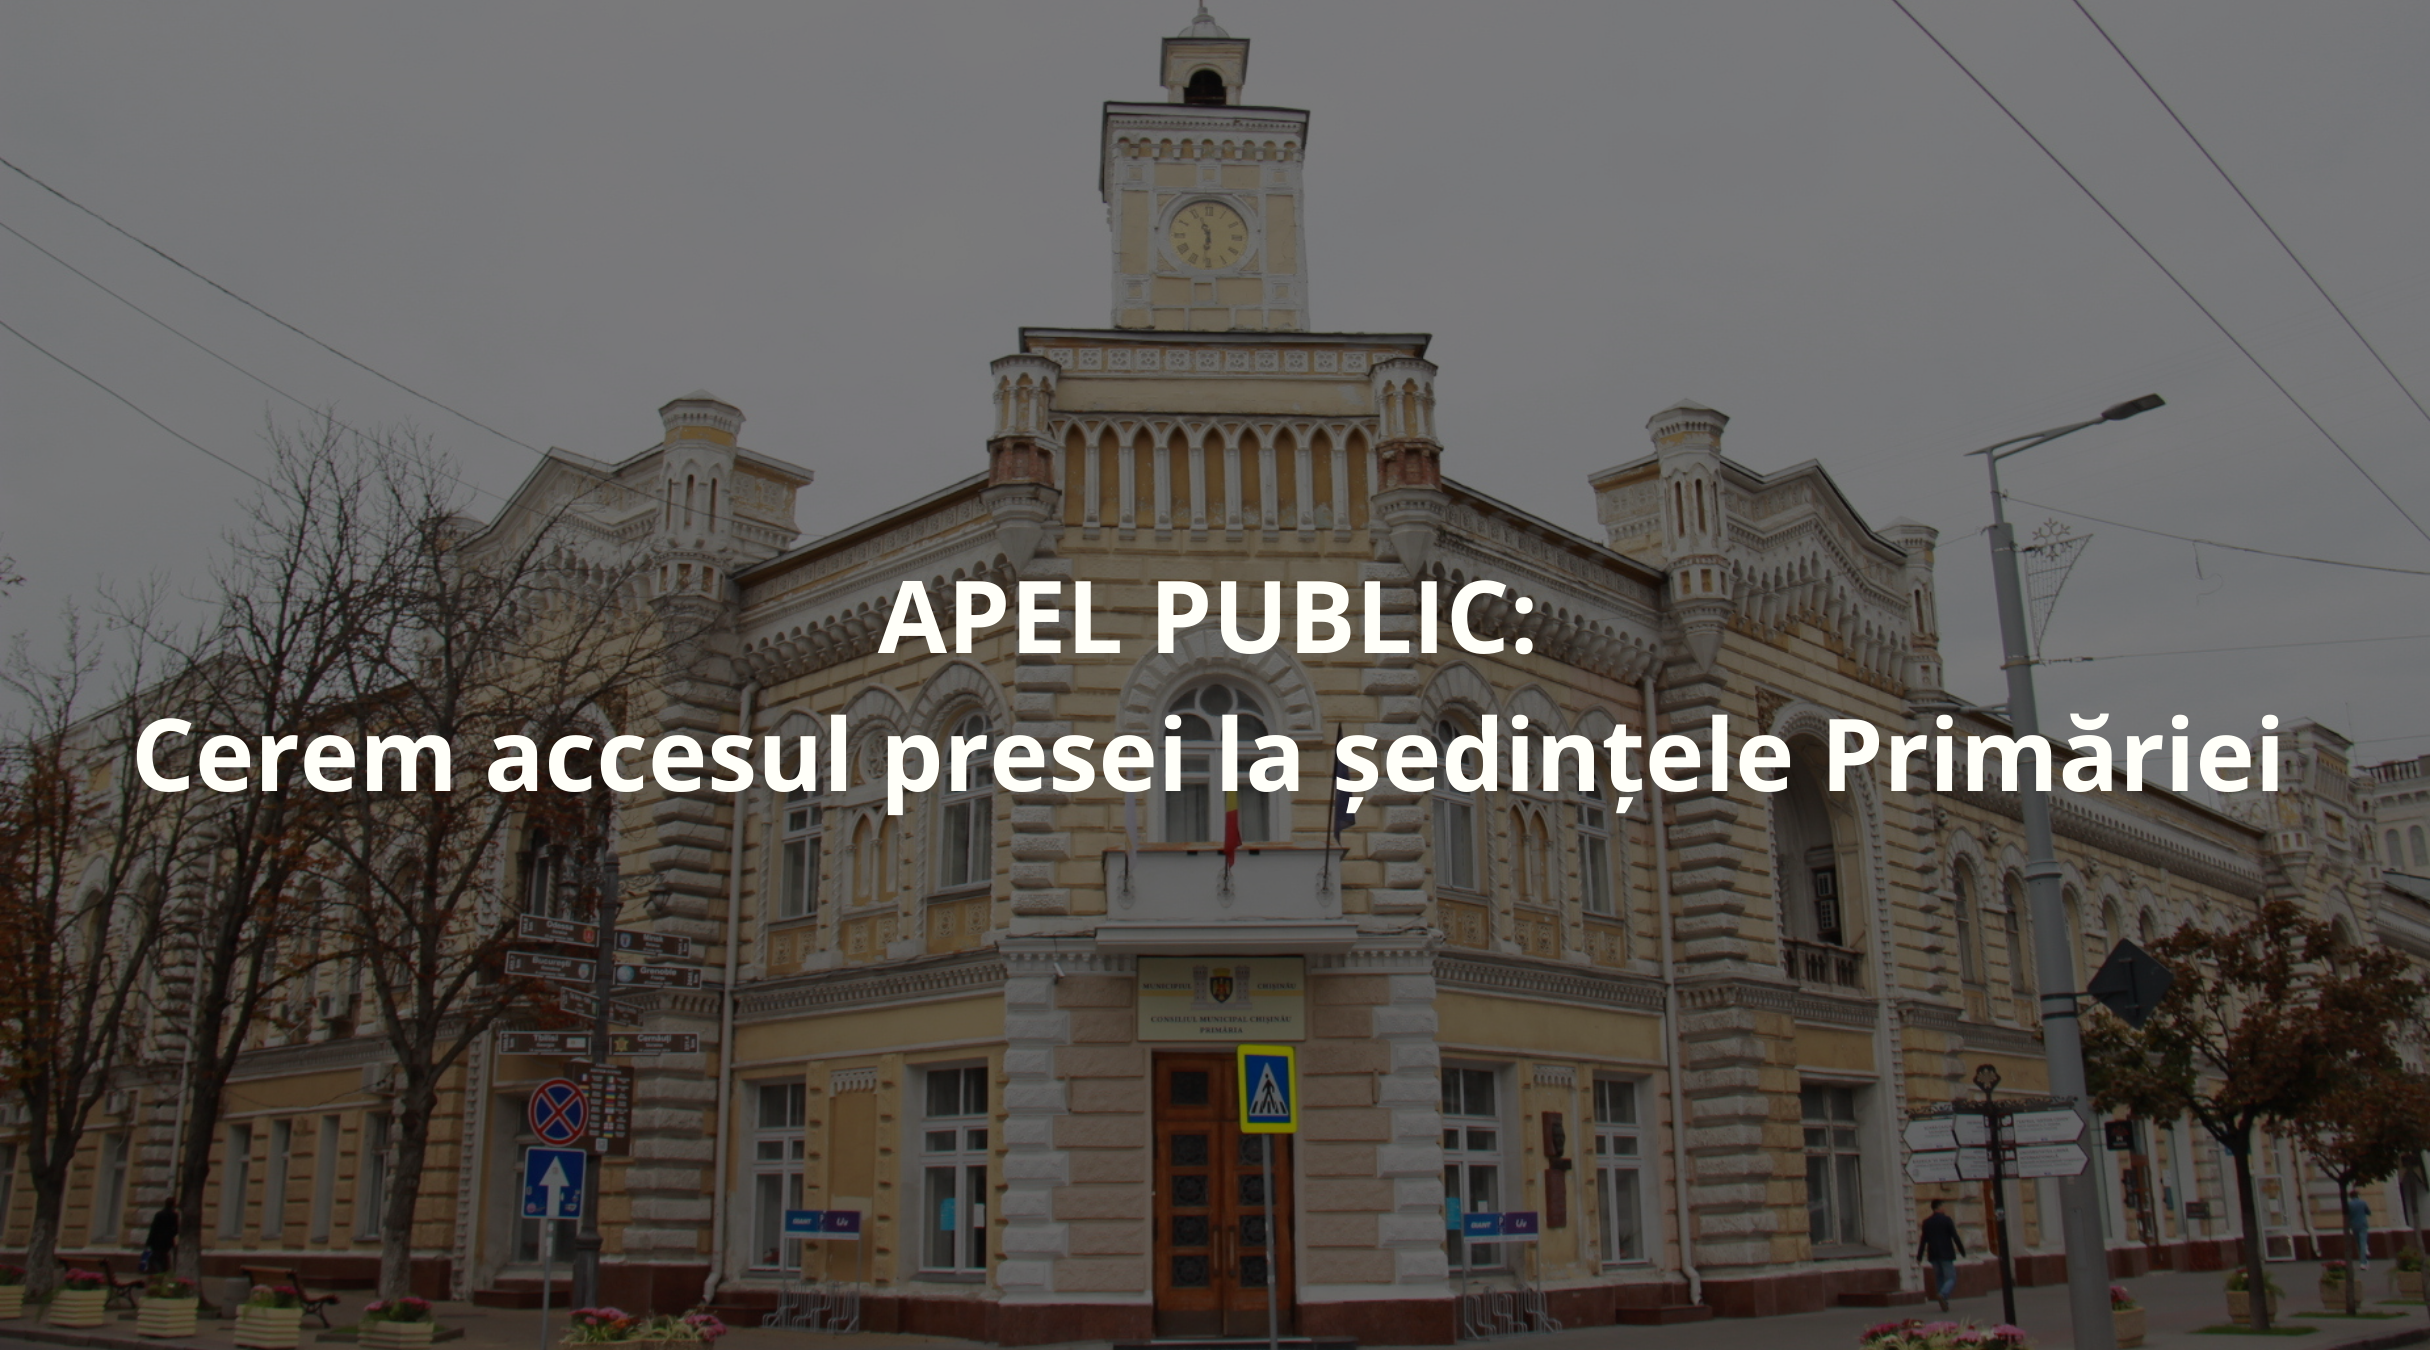 APEL PUBLIC: Cerem accesul presei la ședințele primăriei Image